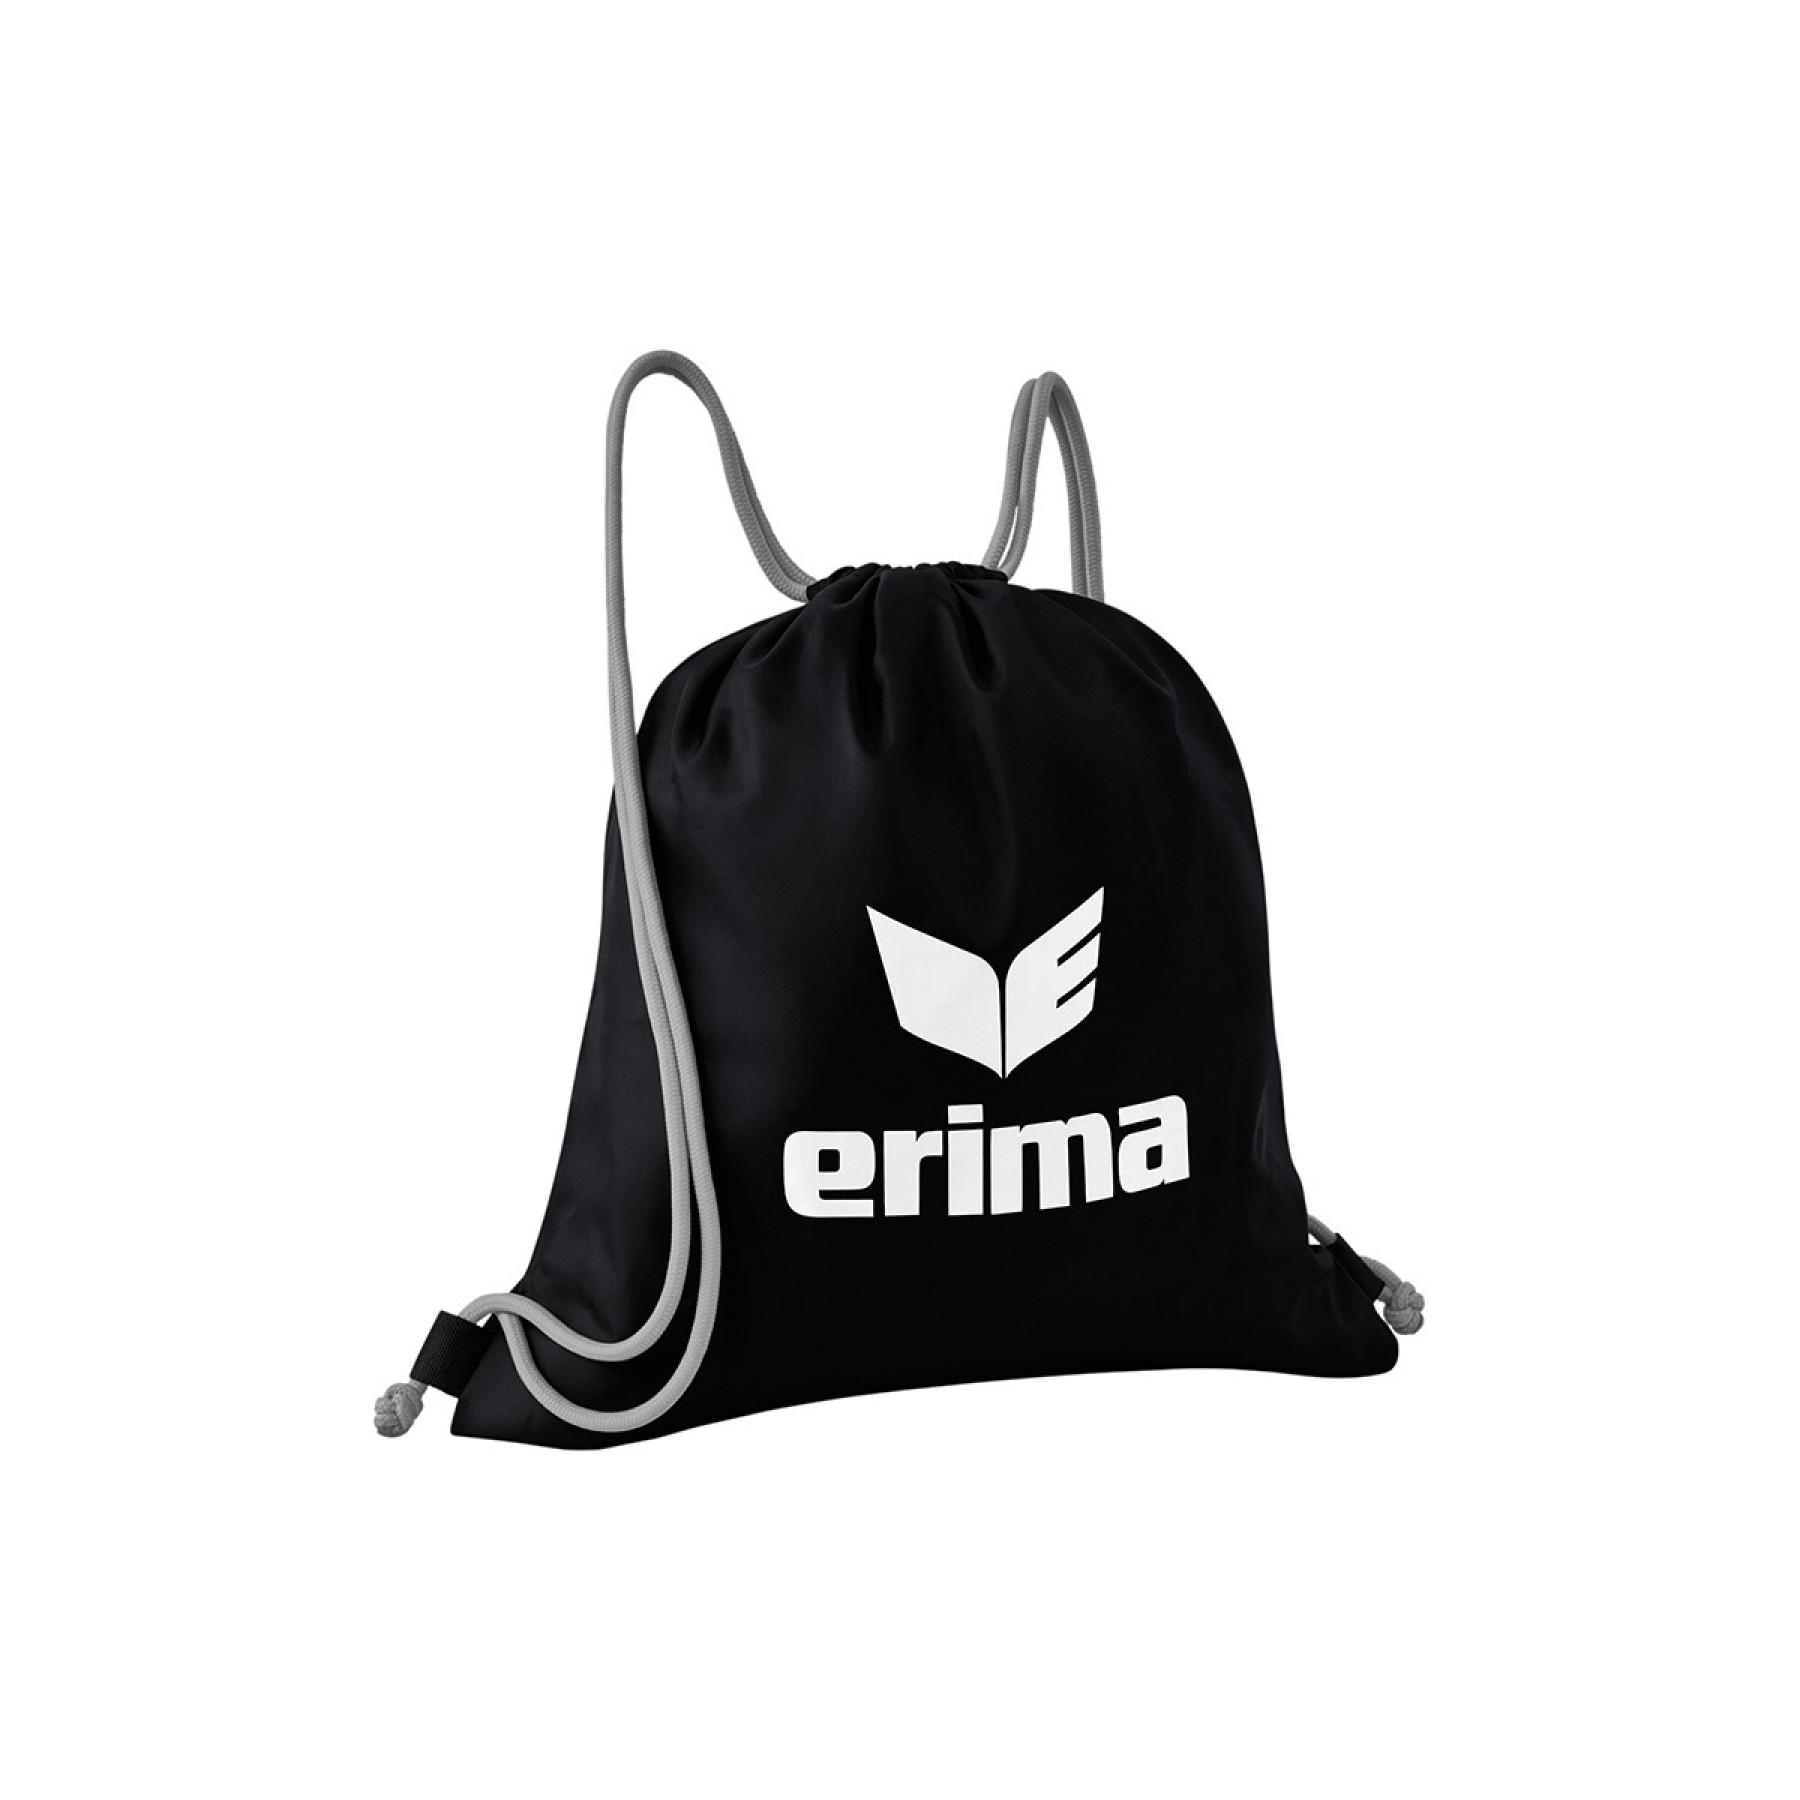 Multipurpose bag pro Erima